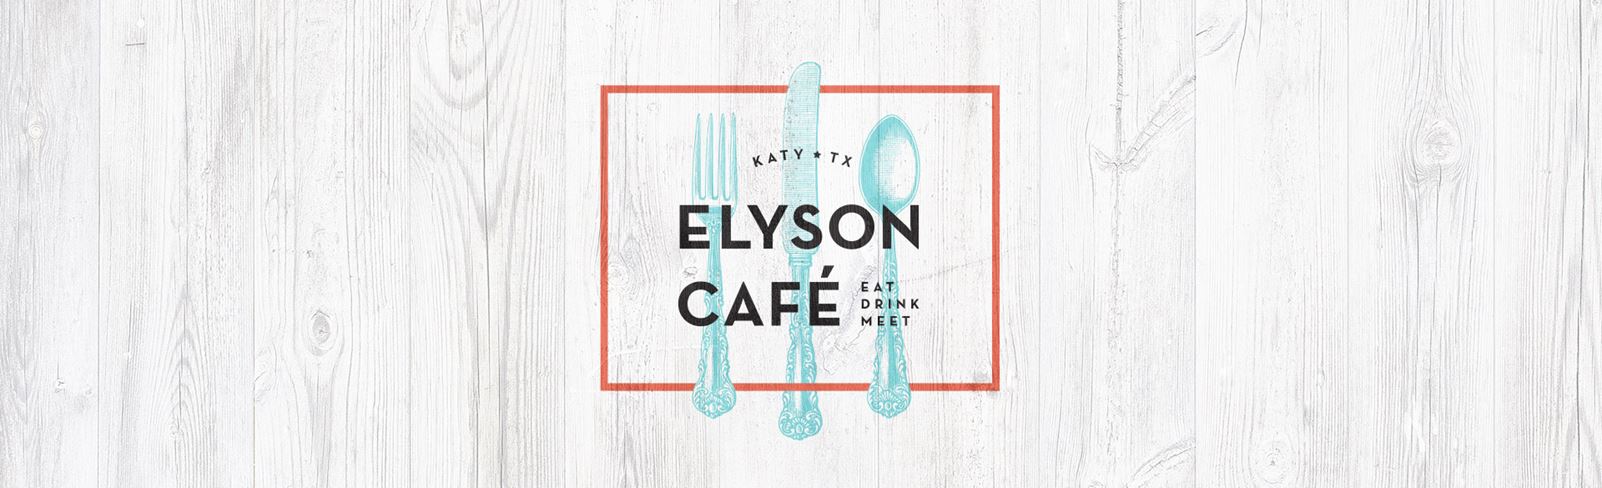 Elyson Cafe logo | Katy, TX Restaurant